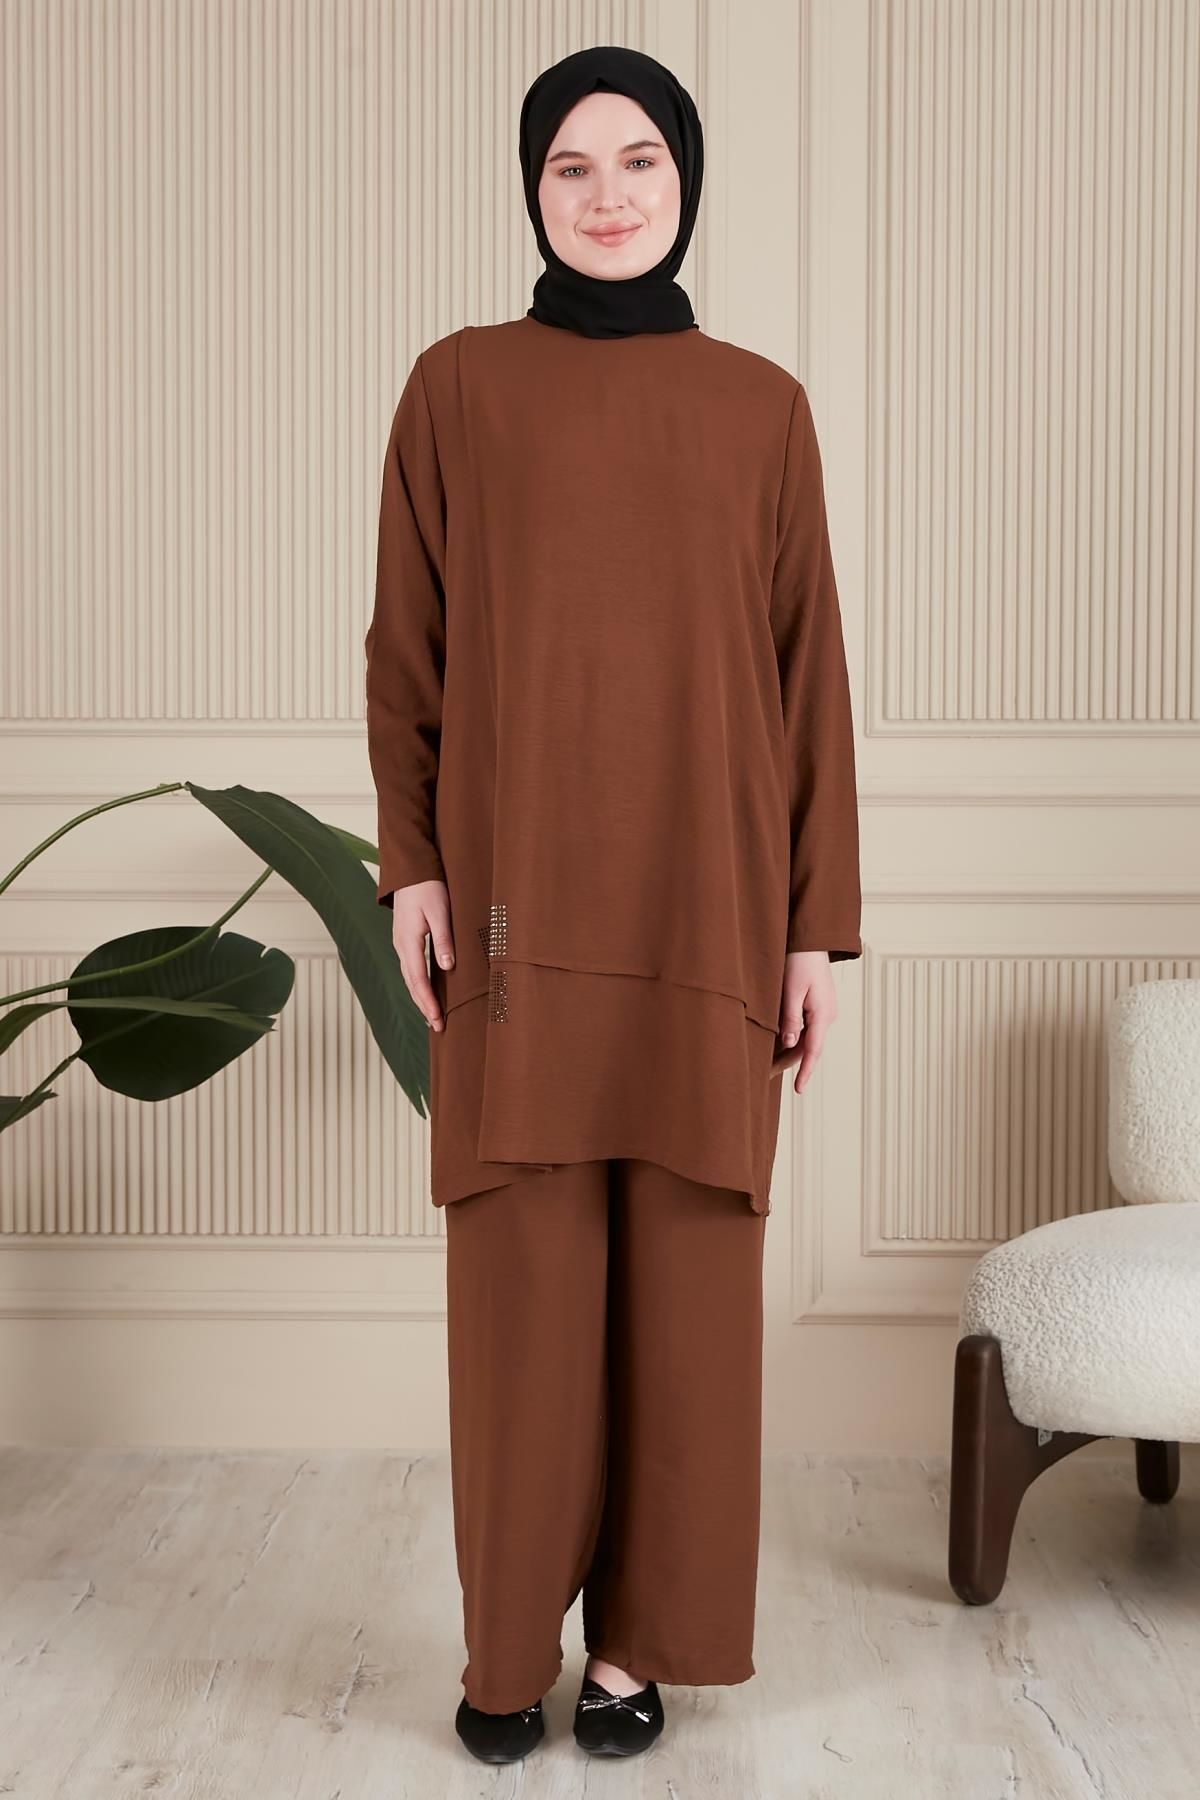 Kadin Tesettur Giyim Buyuk Beden Tesettur İkili Takim Ayrobin Pantolon Tunik Takim Kahverengi - XL